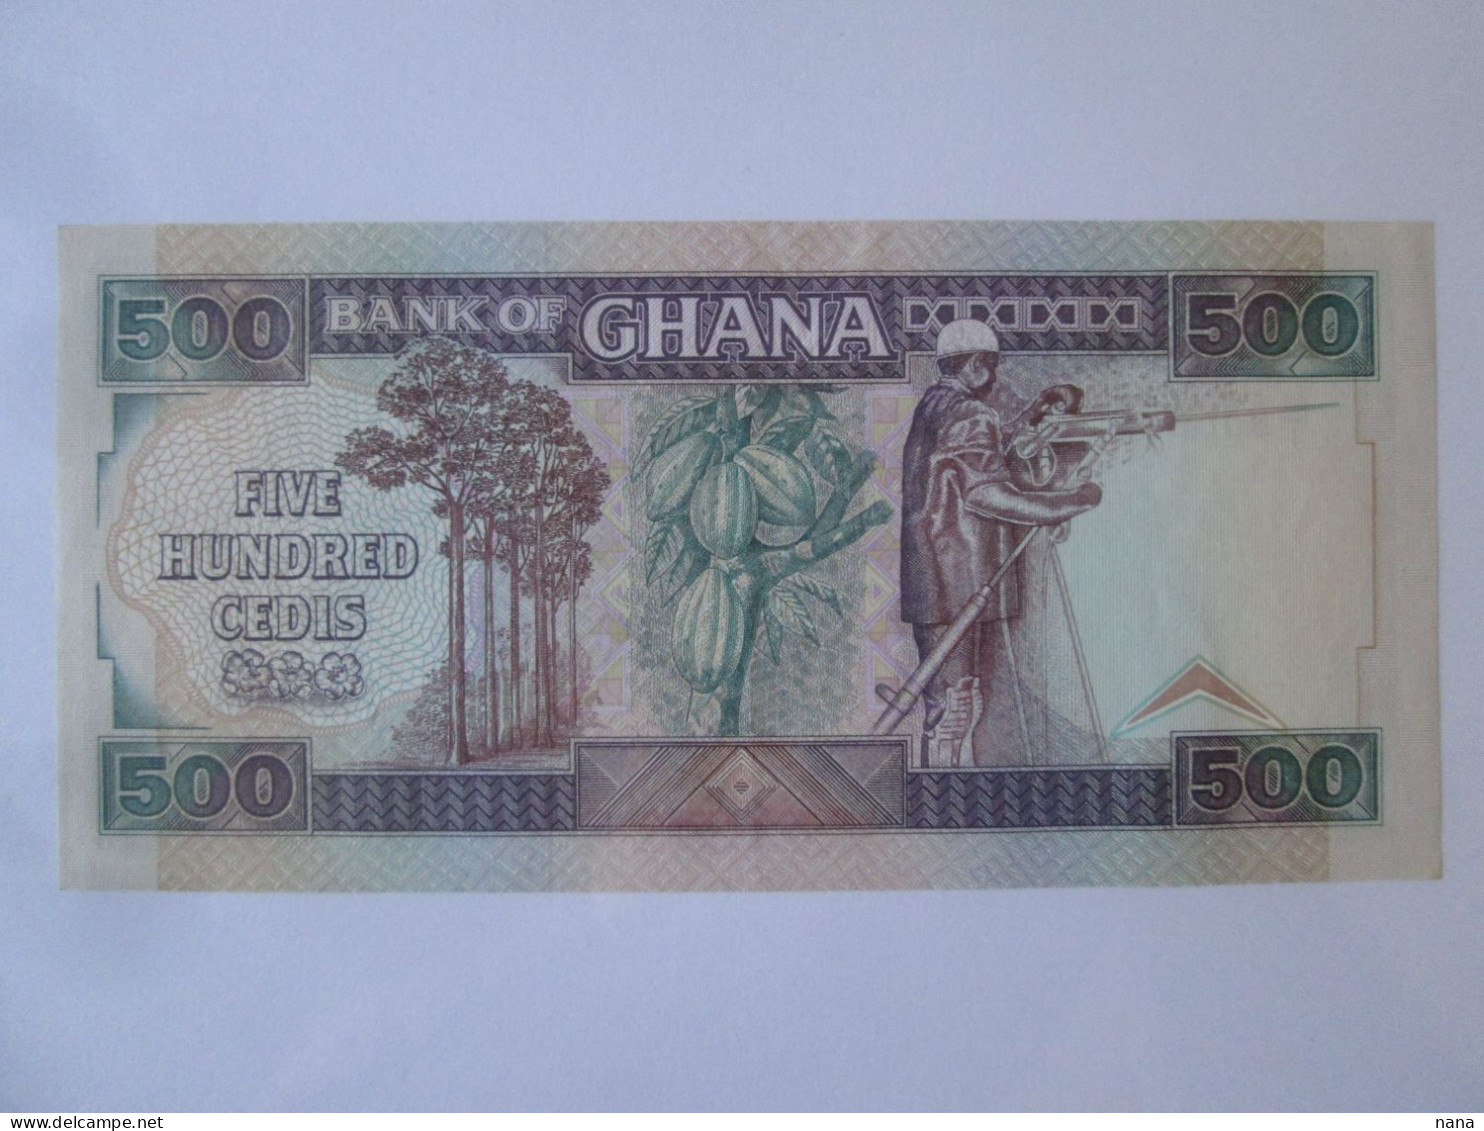 Ghana 500 Cedis 1989 UNC Banknote,see Pictures - Ghana